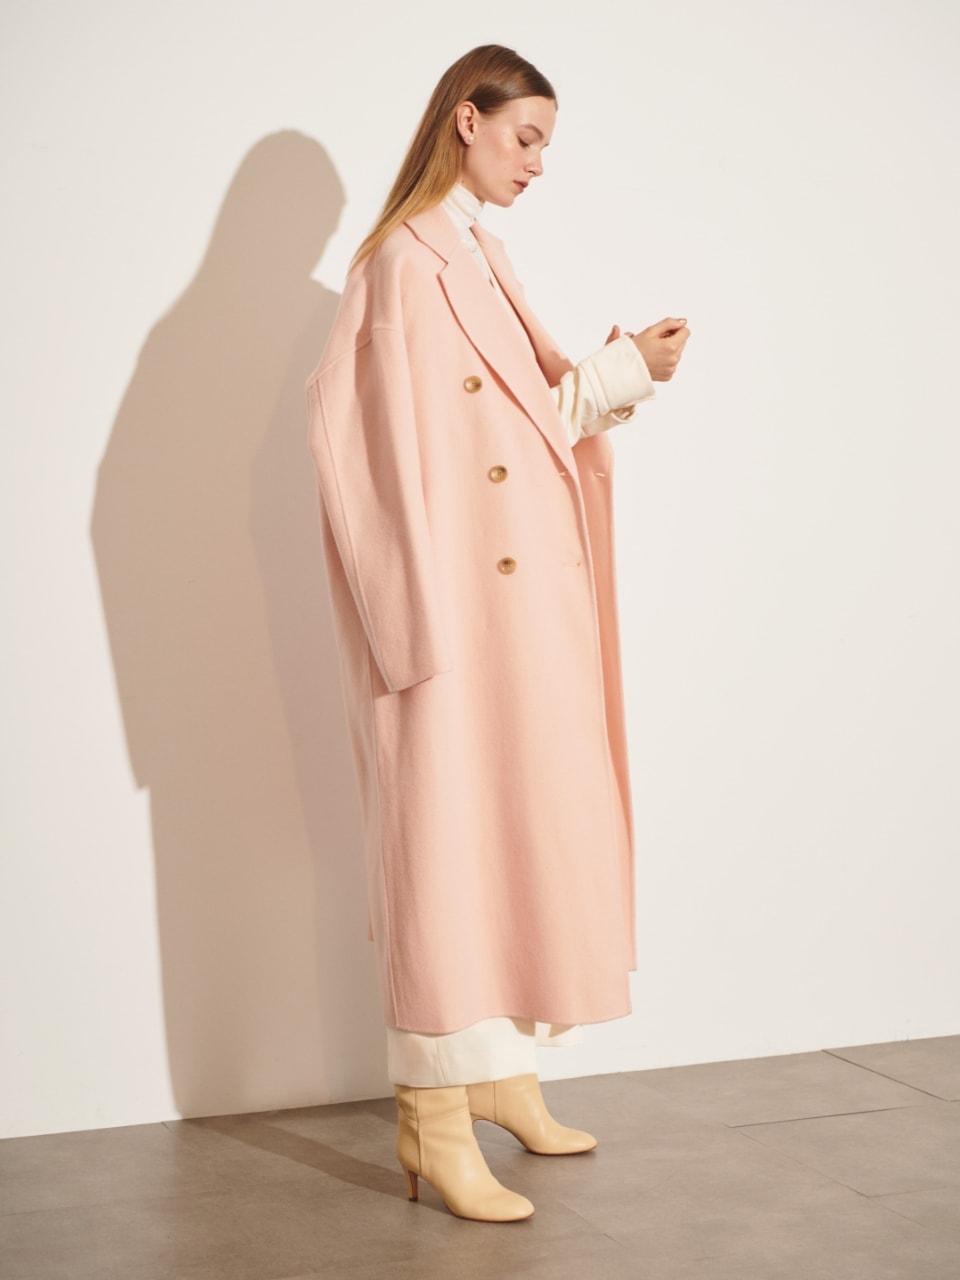 ダブルロングリバーコート（ピンク）を着用した女性の全身の写真２